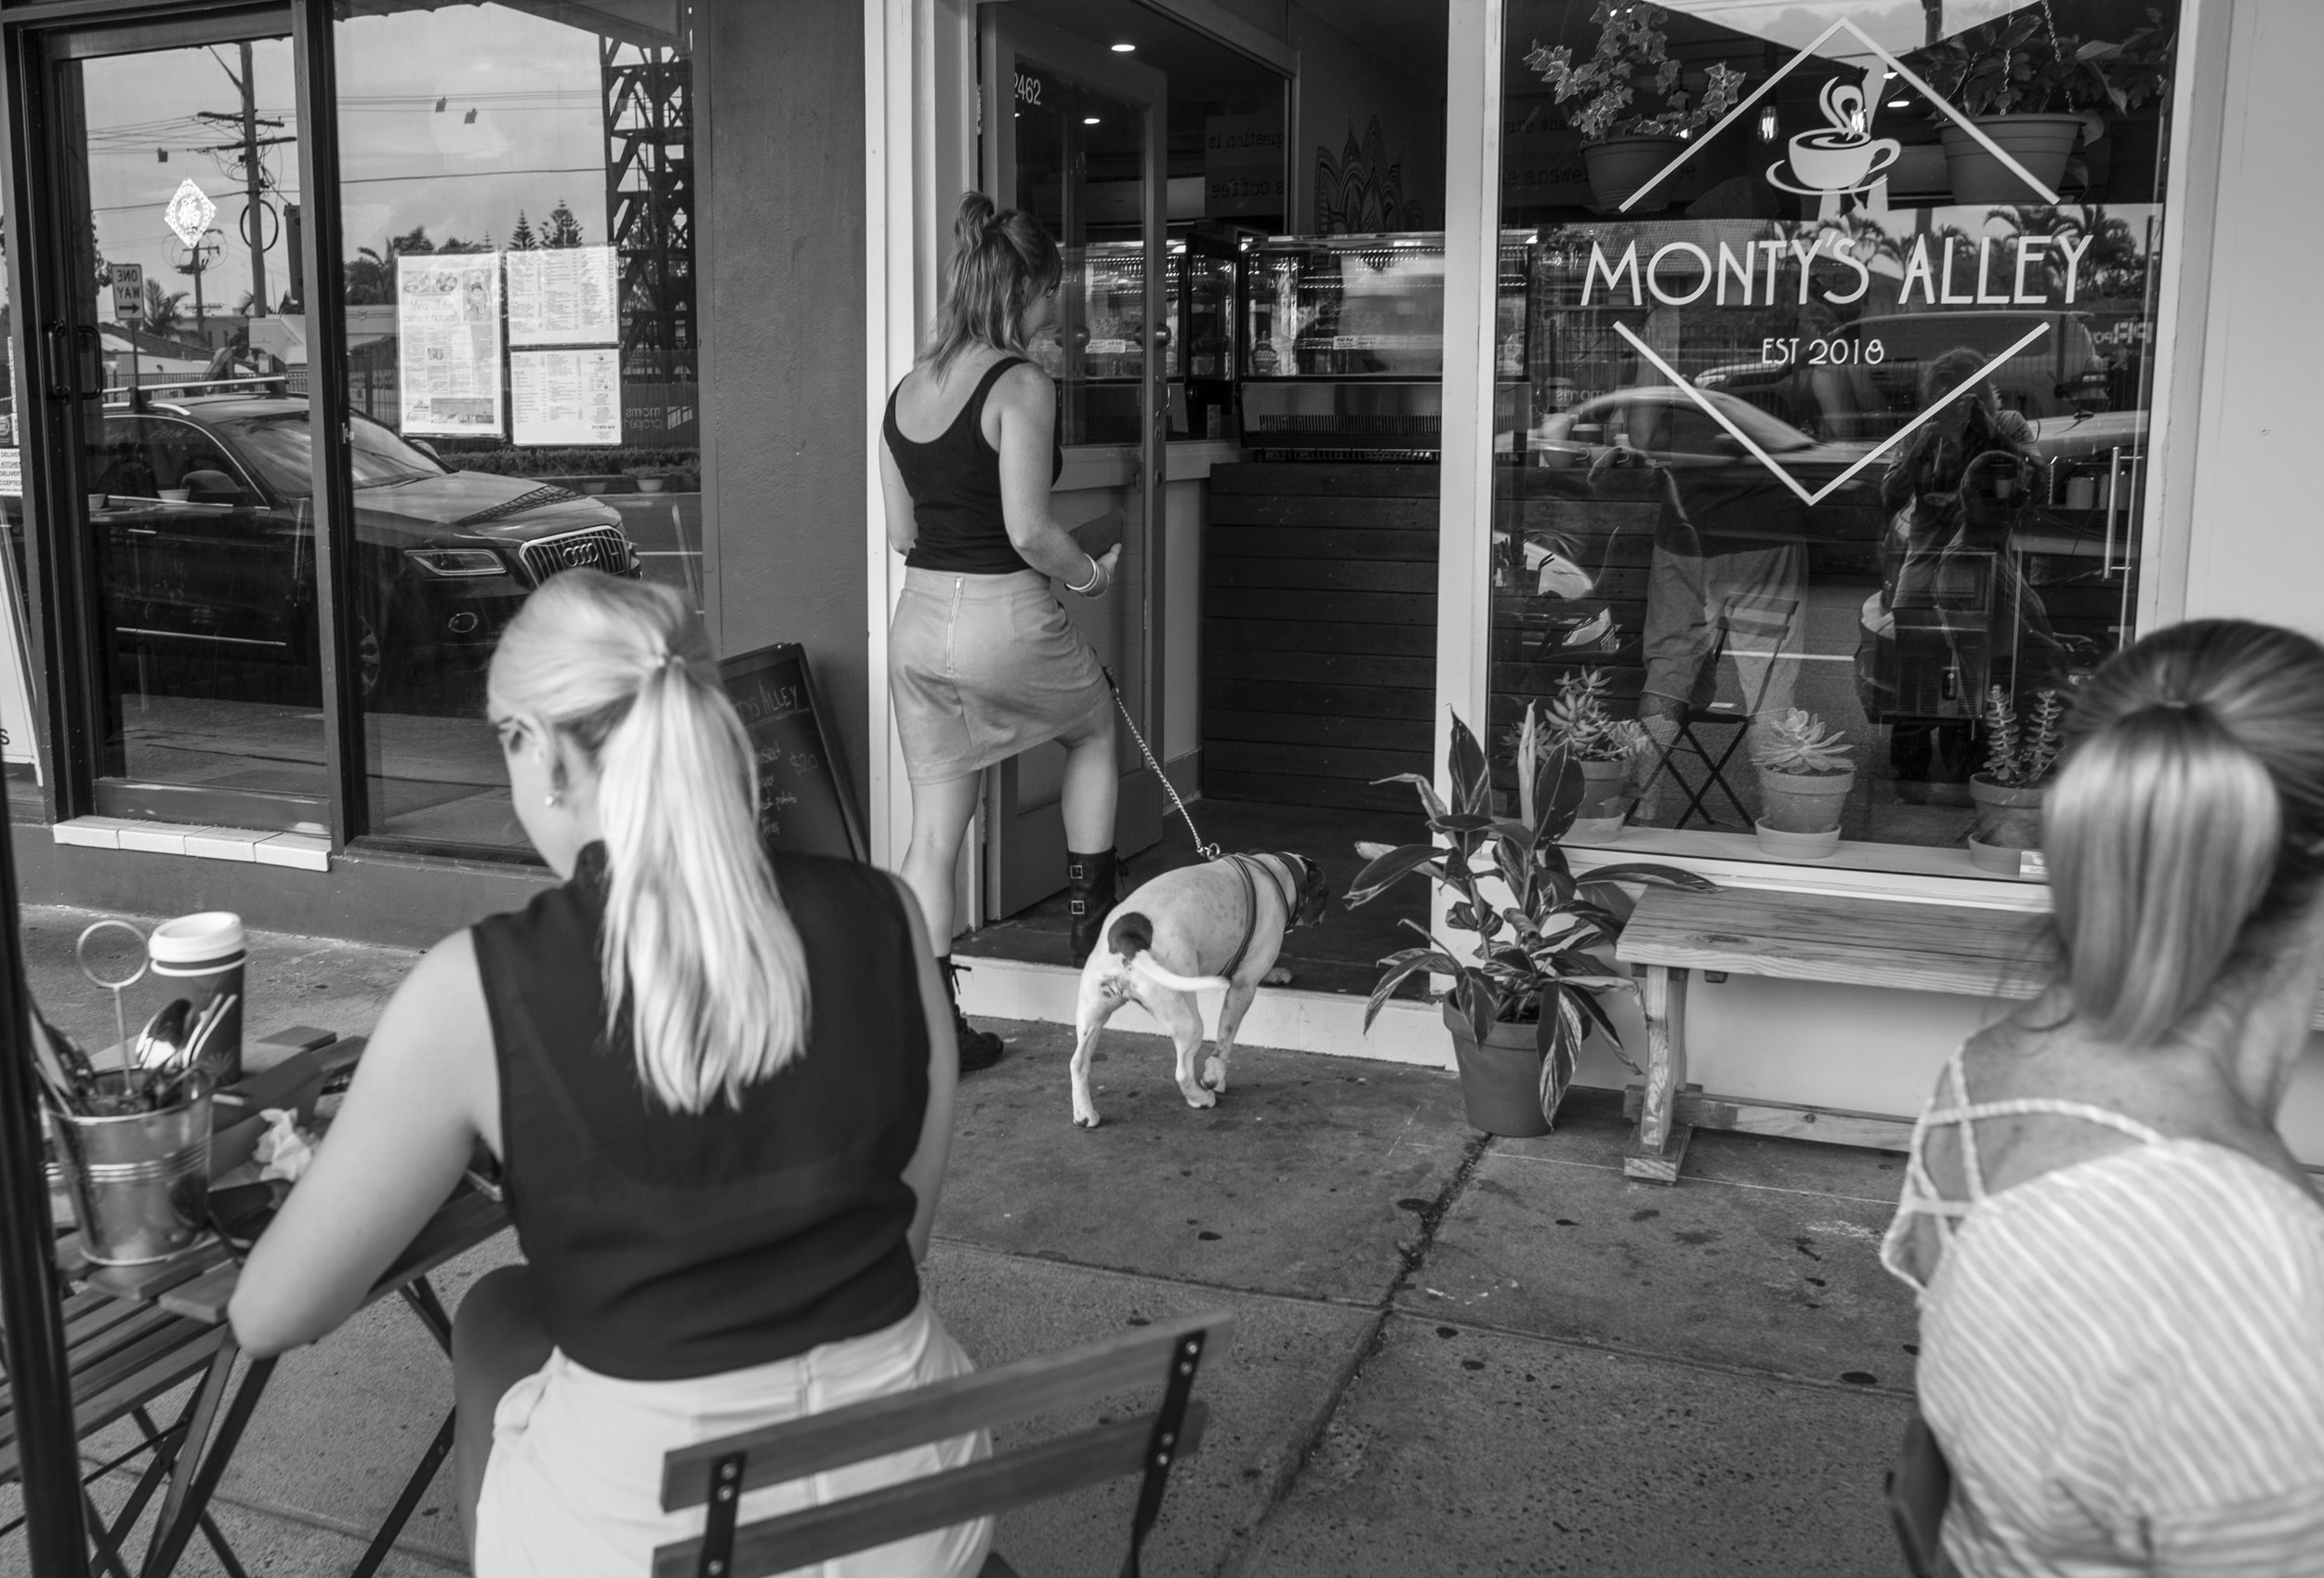  Monty's Cafe 